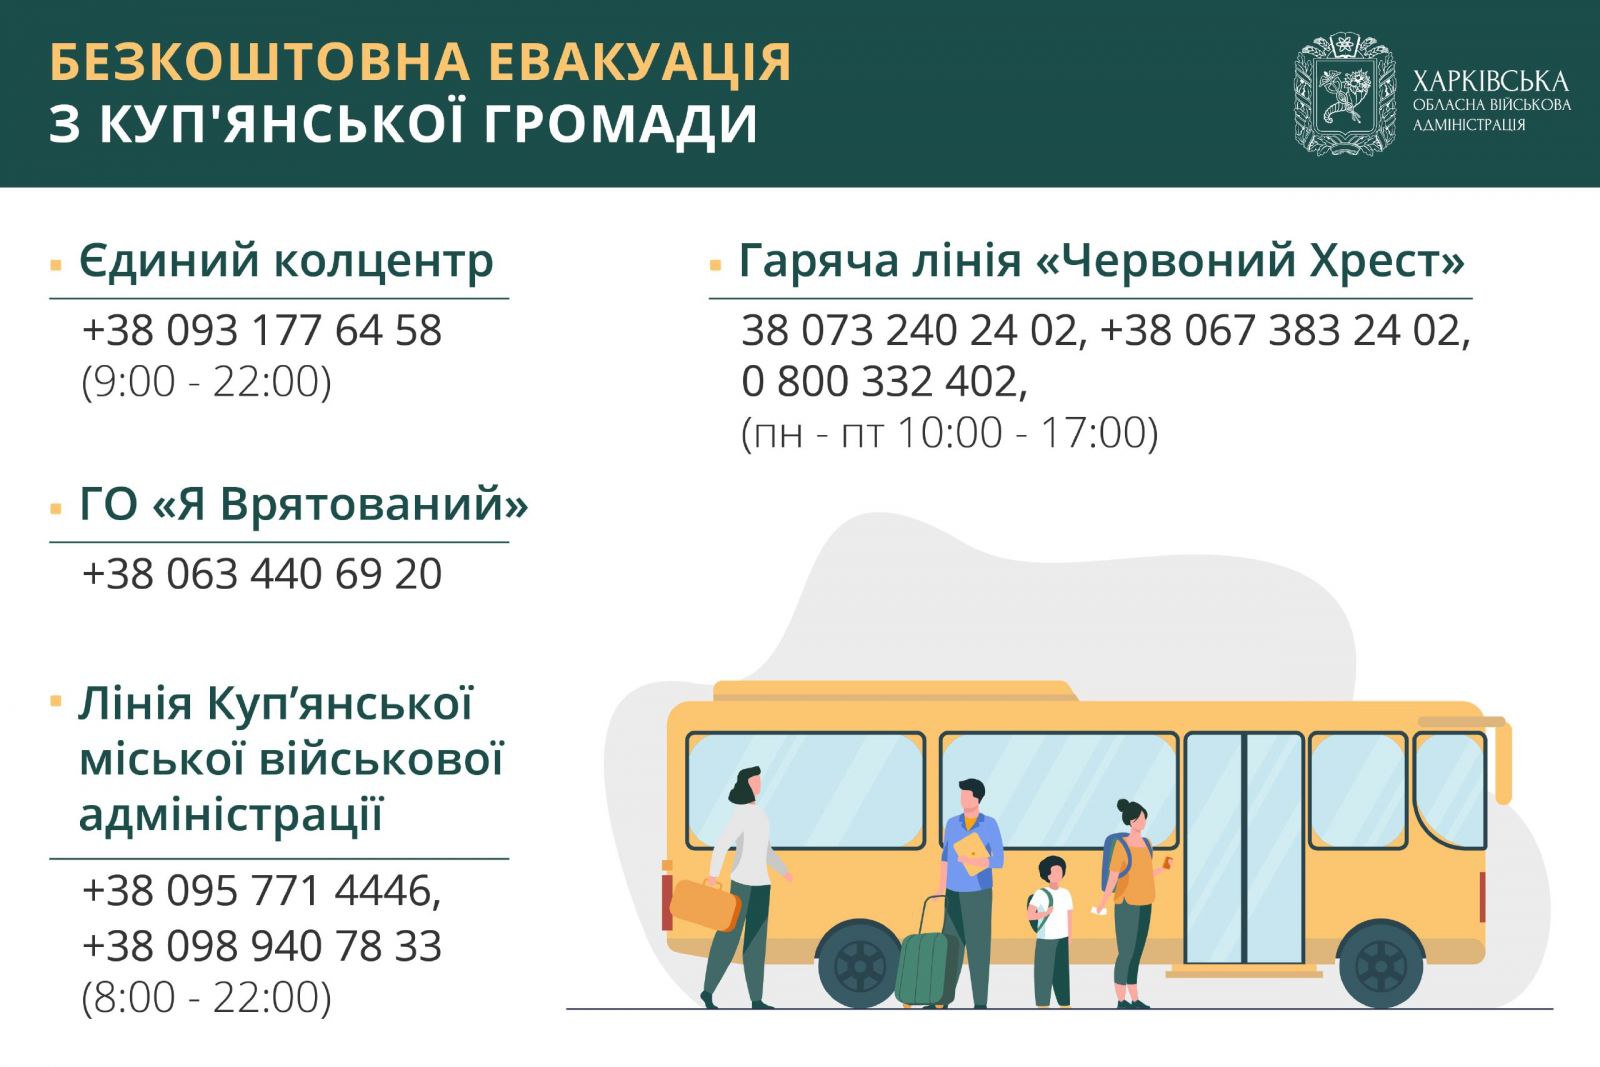 Контакти для евакуації. Графіка Харківської ОВА